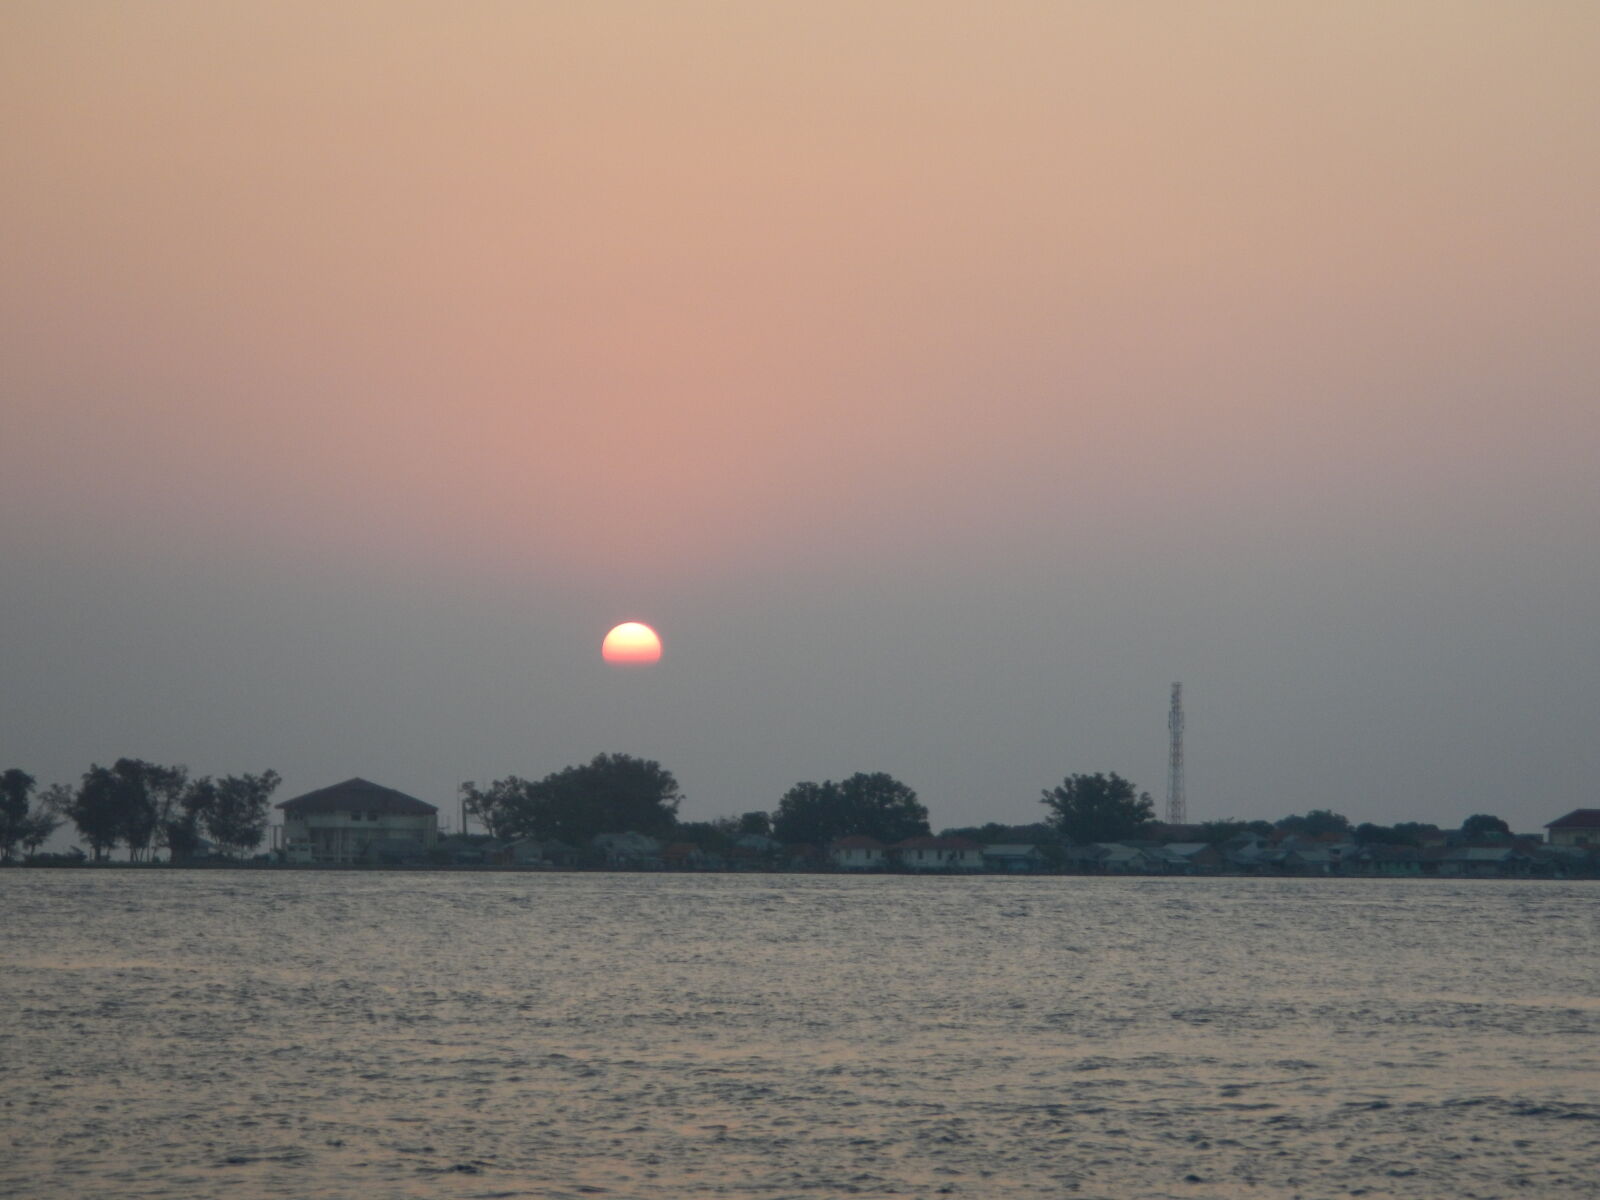 Nikon Coolpix AW100 sample photo. Sea, sunset photography